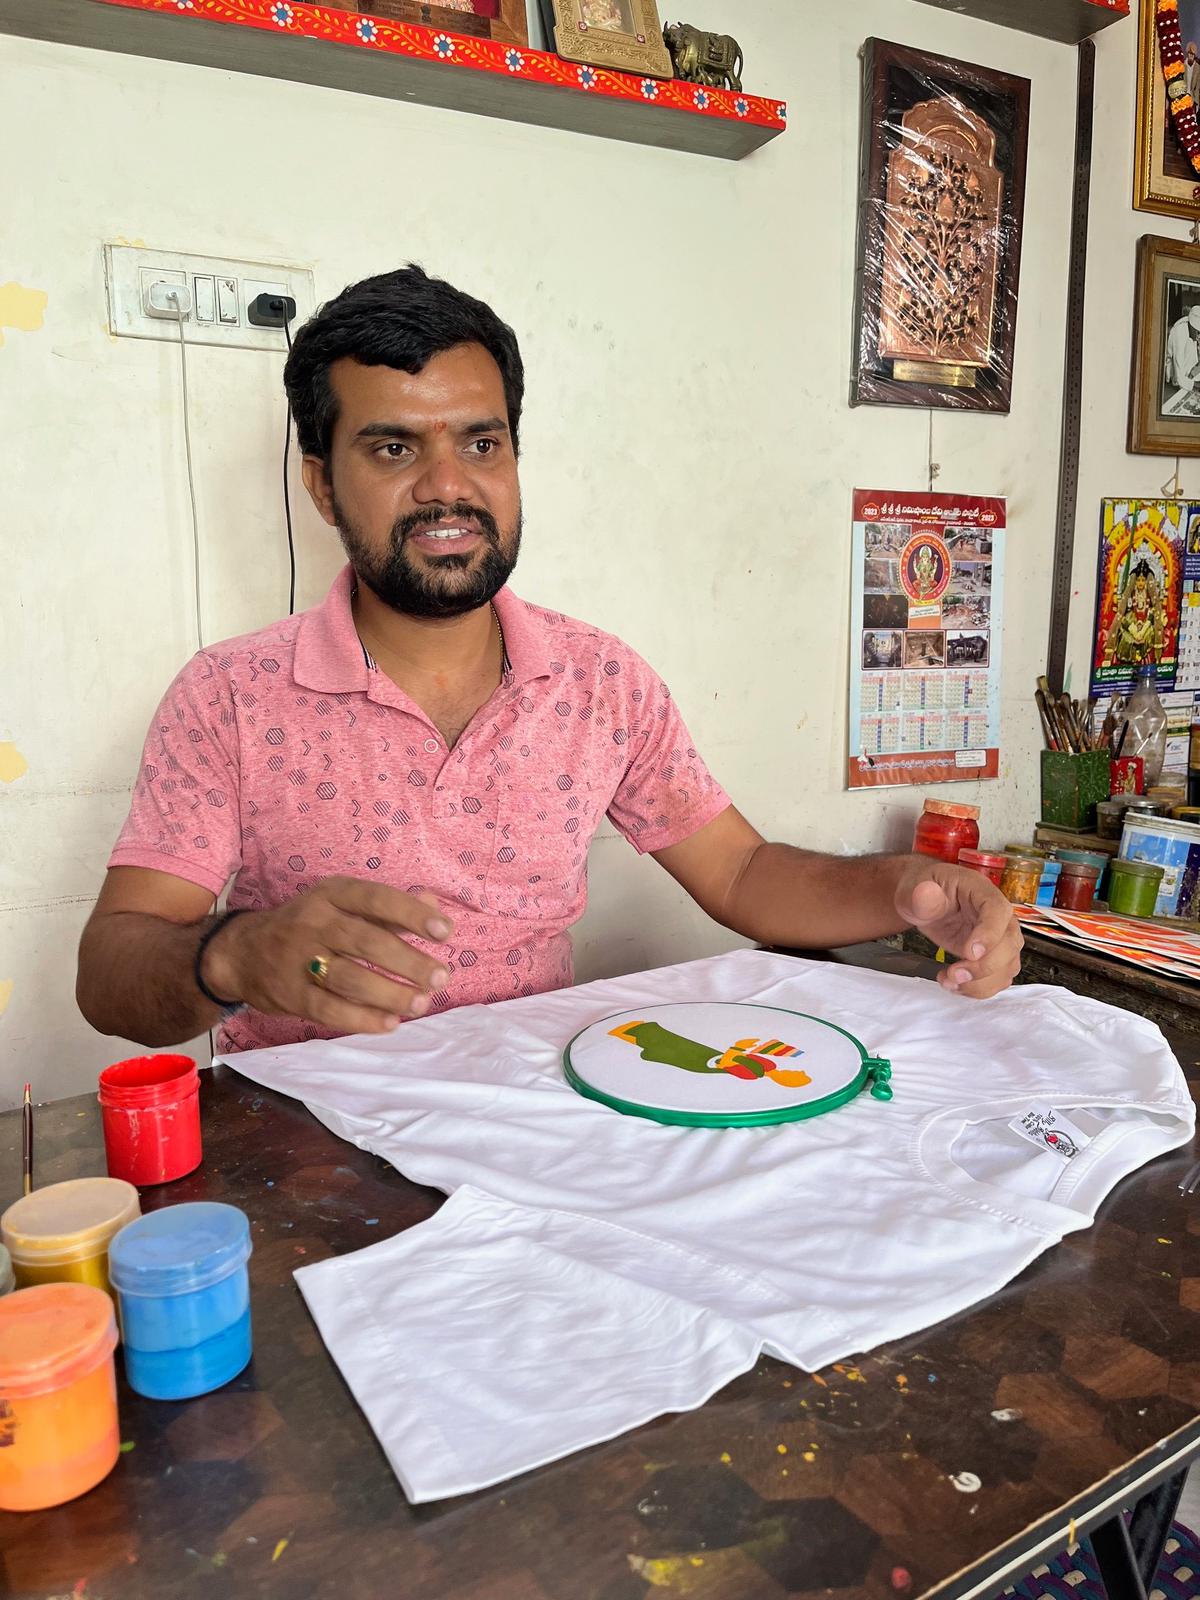 Rakesh painting on a tshirt